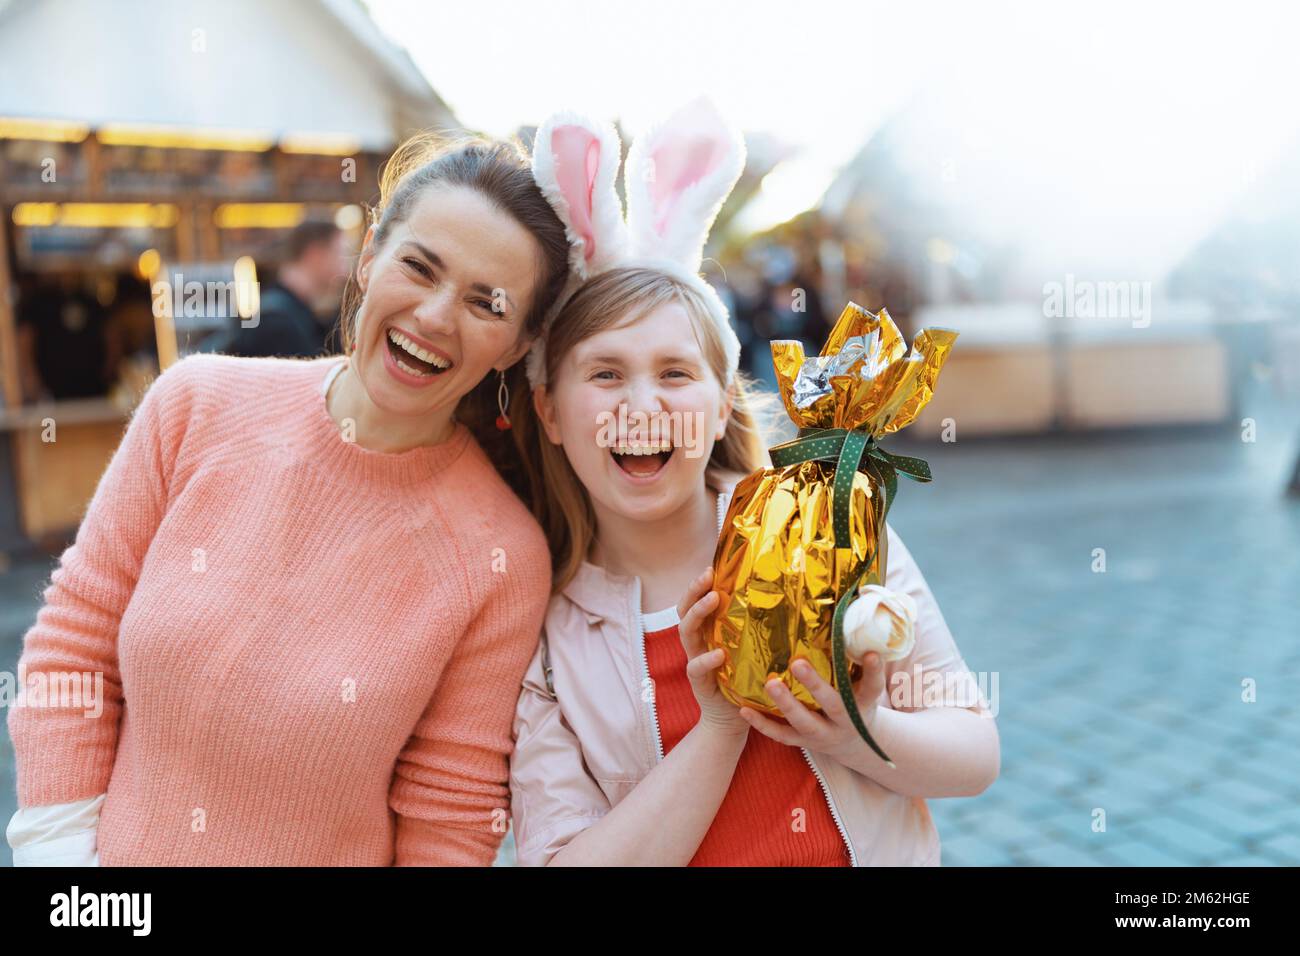 Osterspaß. Glückliche kleine Mutter und Kind mit goldenem osterei auf dem Jahrmarkt in der Stadt. Stockfoto